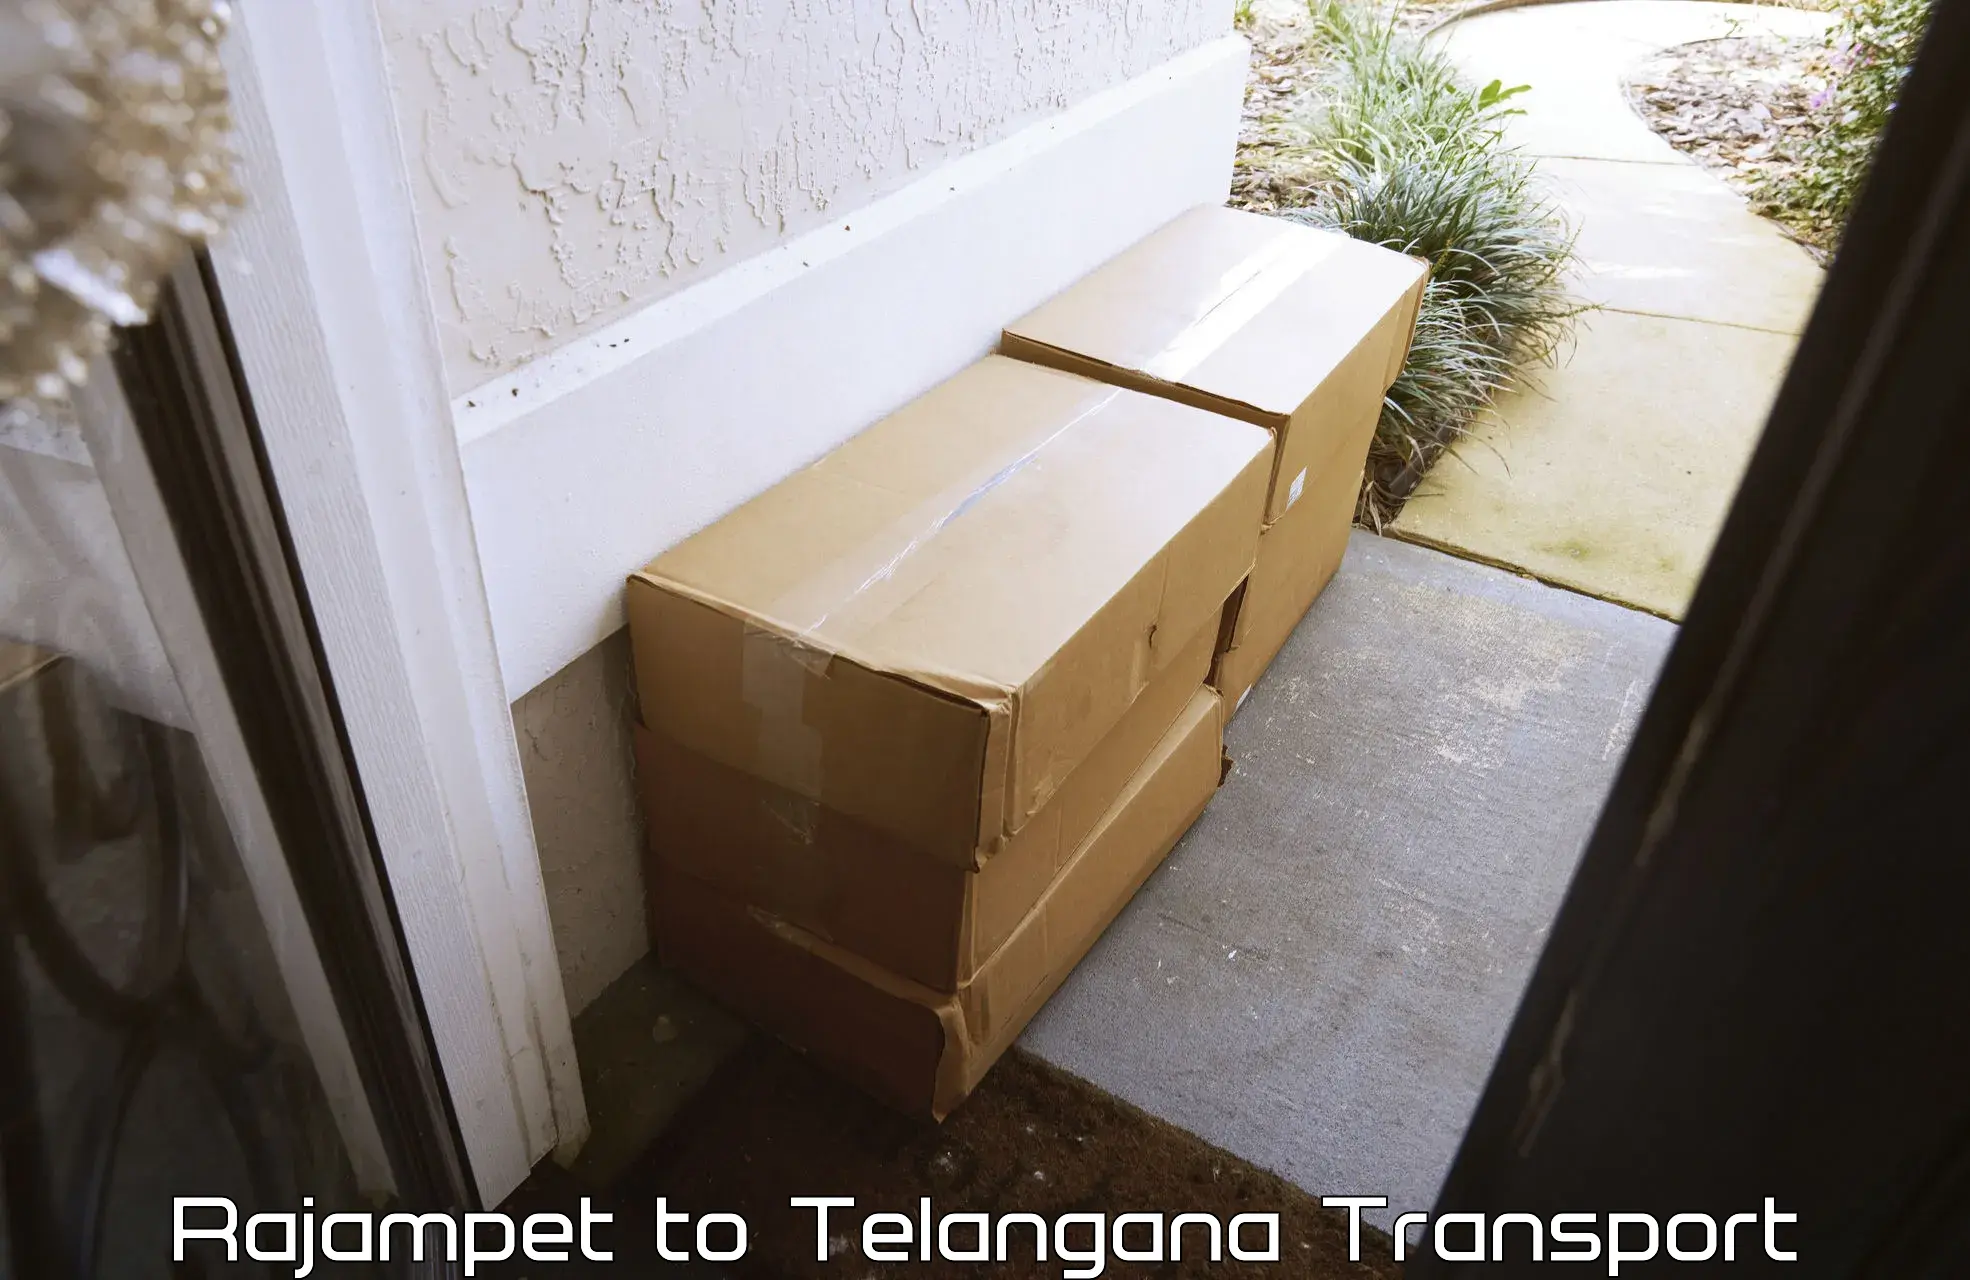 Two wheeler parcel service Rajampet to Telangana